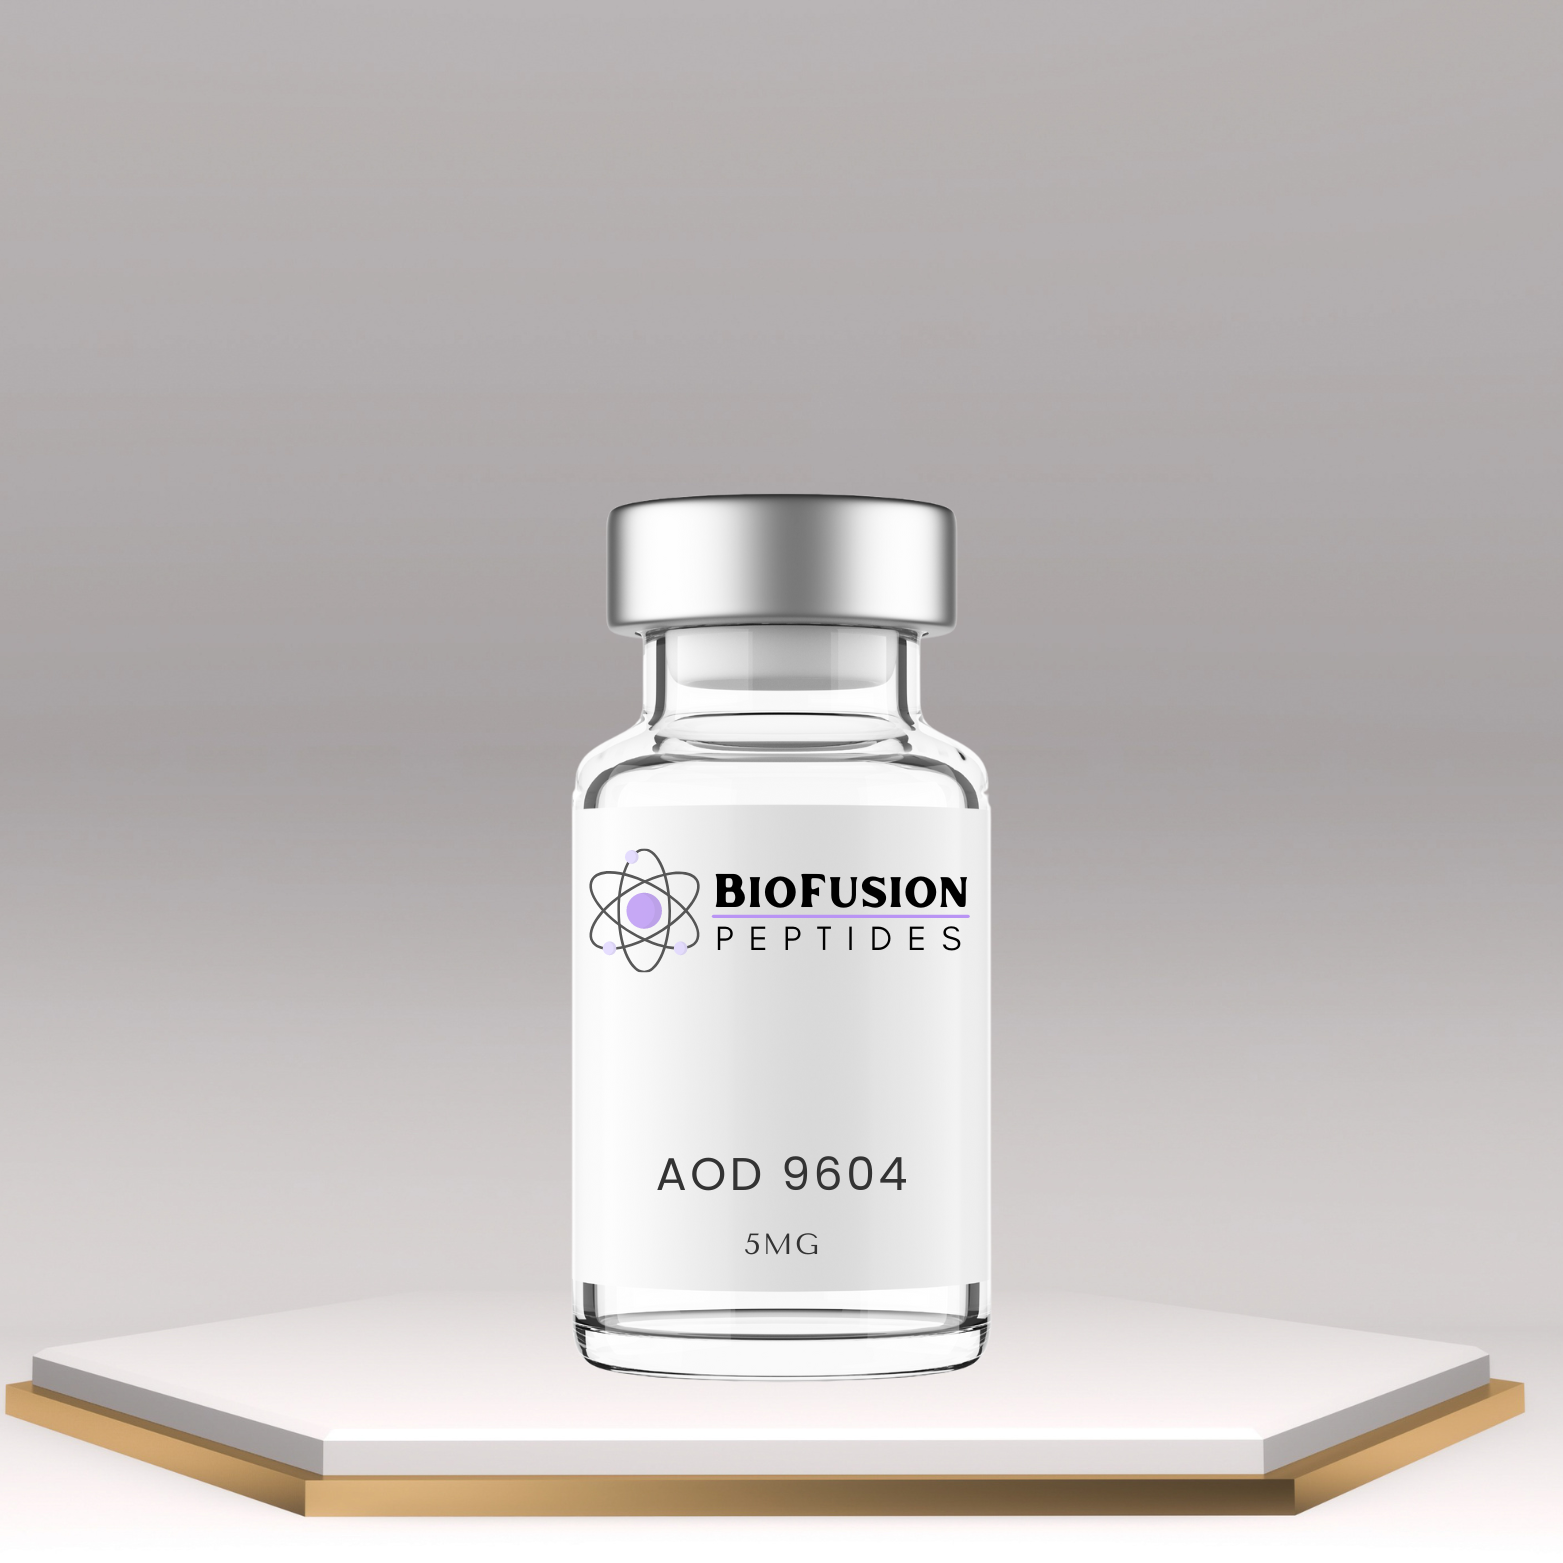 BioFusion Peptides AOD 9604 5MG vial